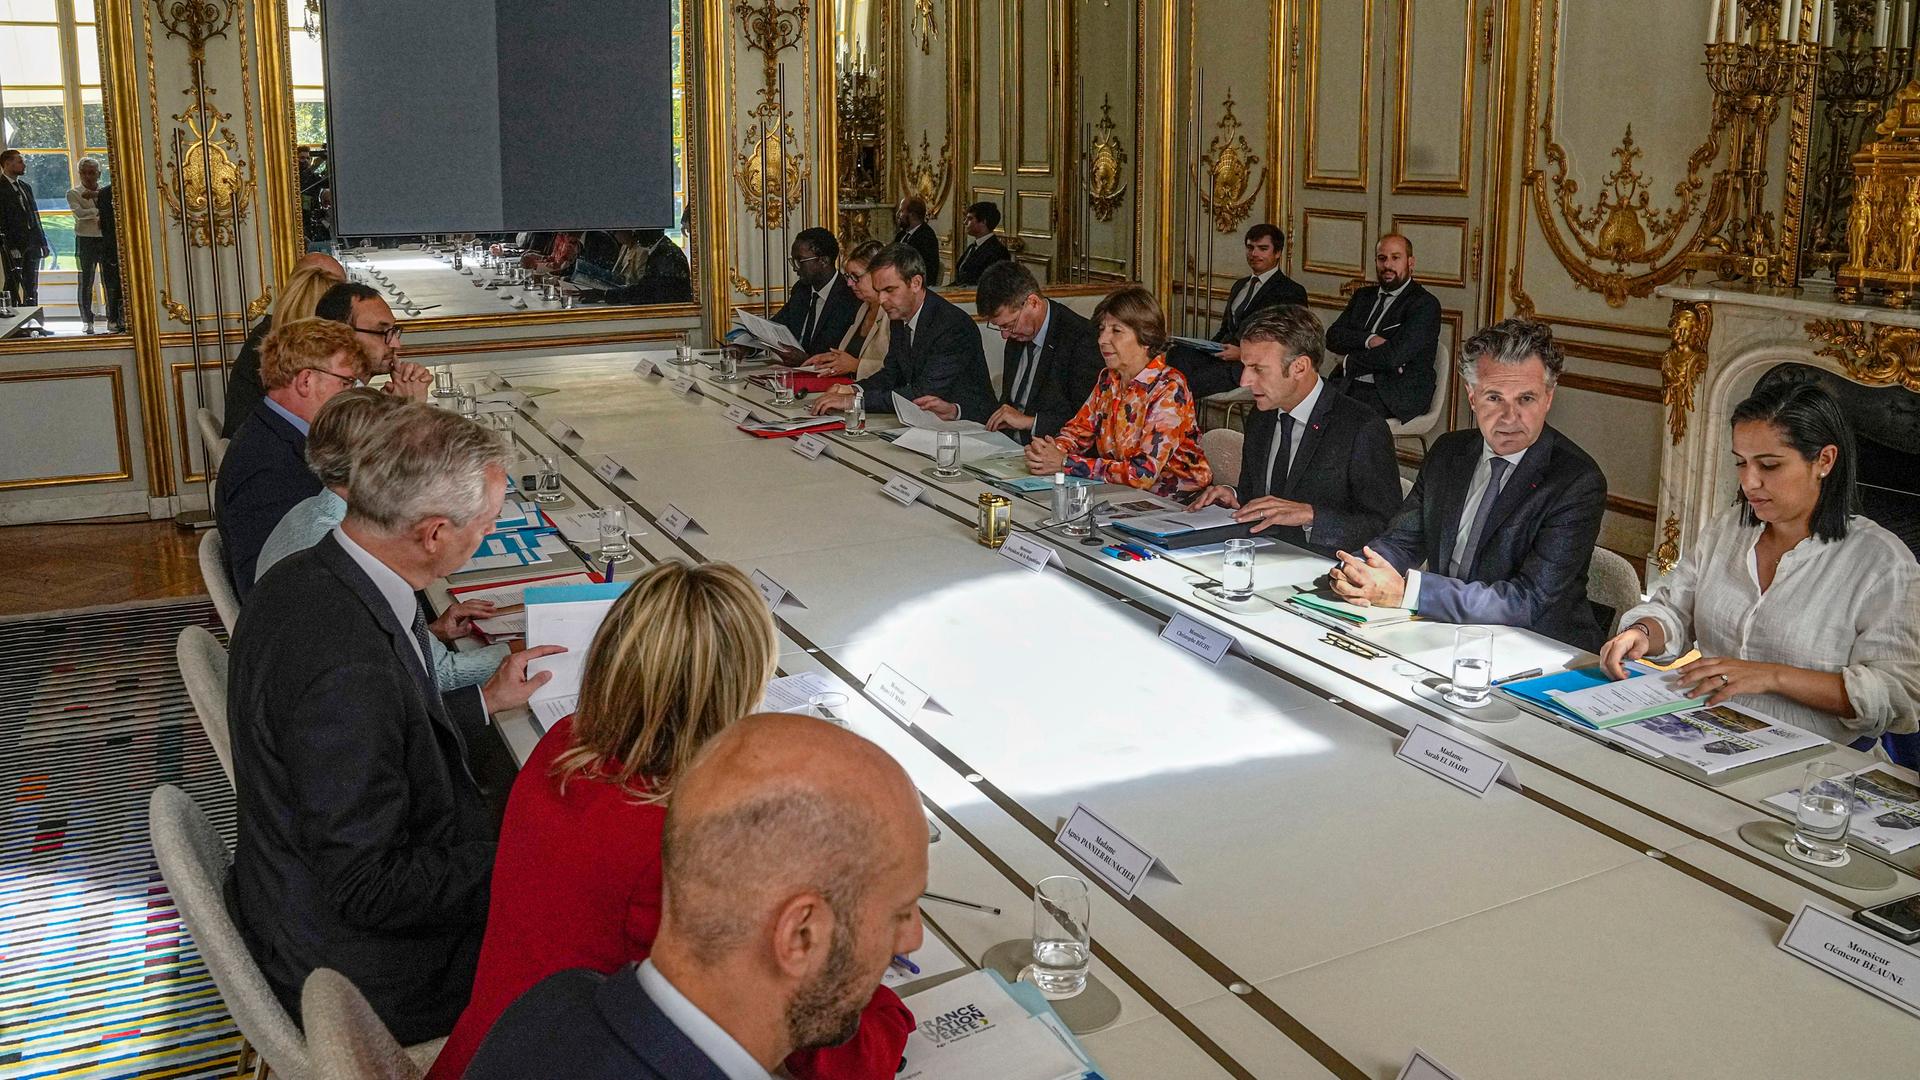 Frankreich, Paris: Emmanuel Macron (3.v.r), Präsident von Frankreich, spricht bei der Eröffnung eines speziellen Klimatreffens im Elysee-Palast.